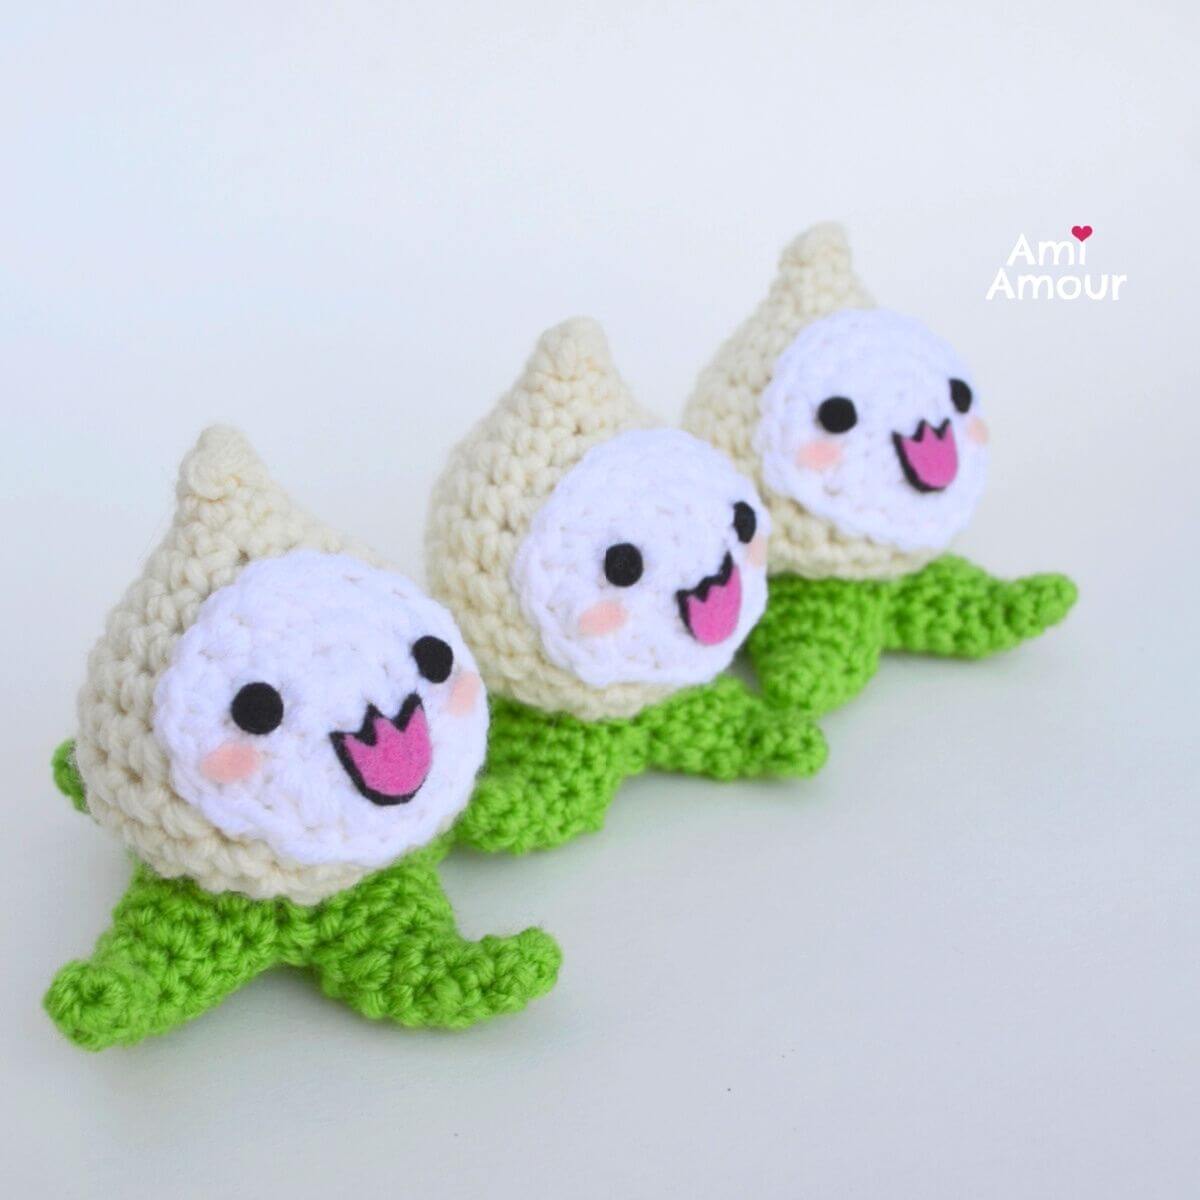 3 Happy Crochet Pachimaris